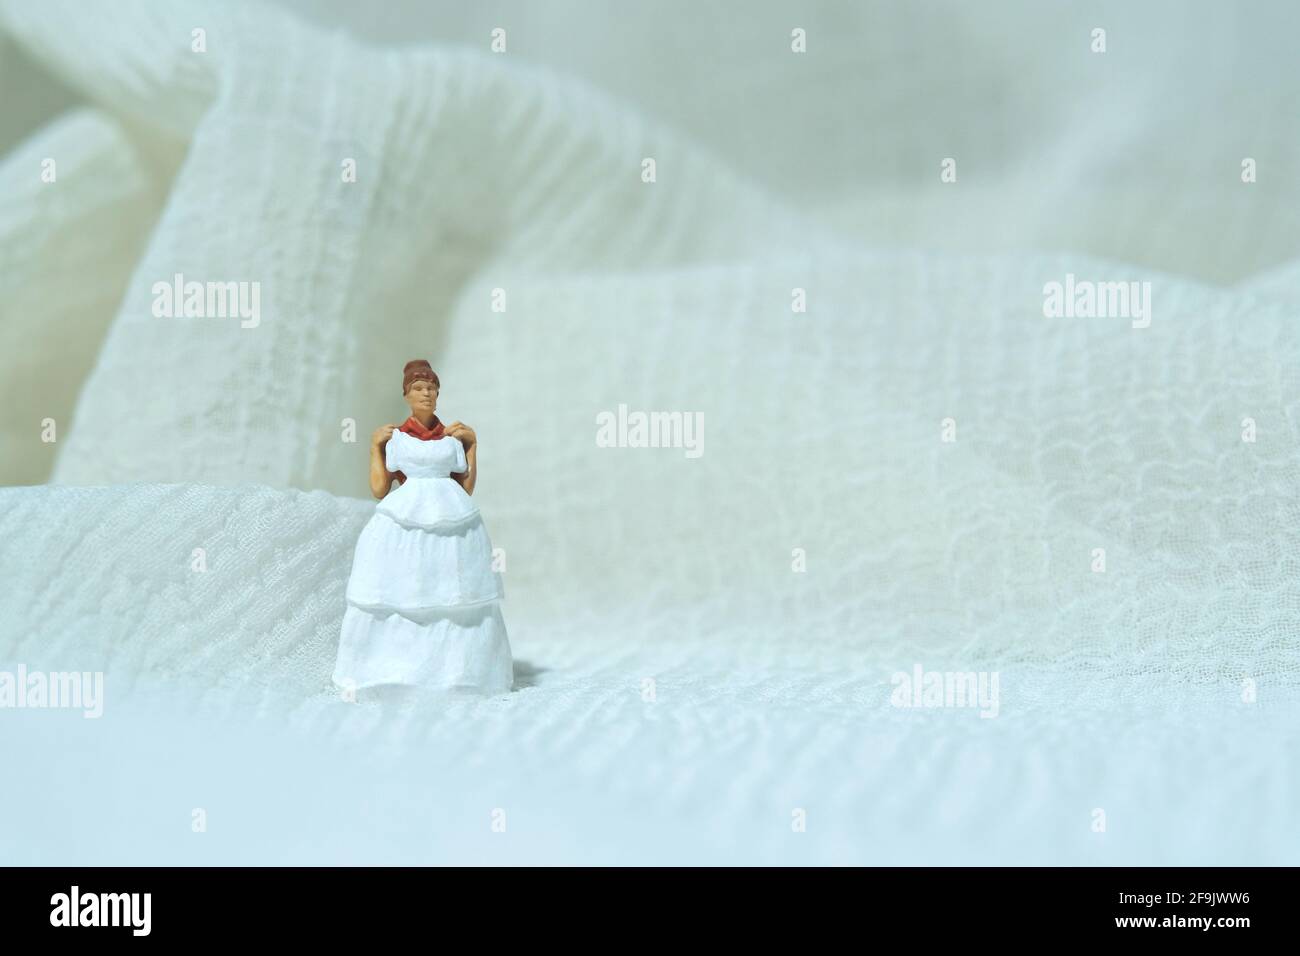 Frauen Miniatur Menschen versuchen, Hochzeitskleid zu wählen. Bildfoto Stockfoto